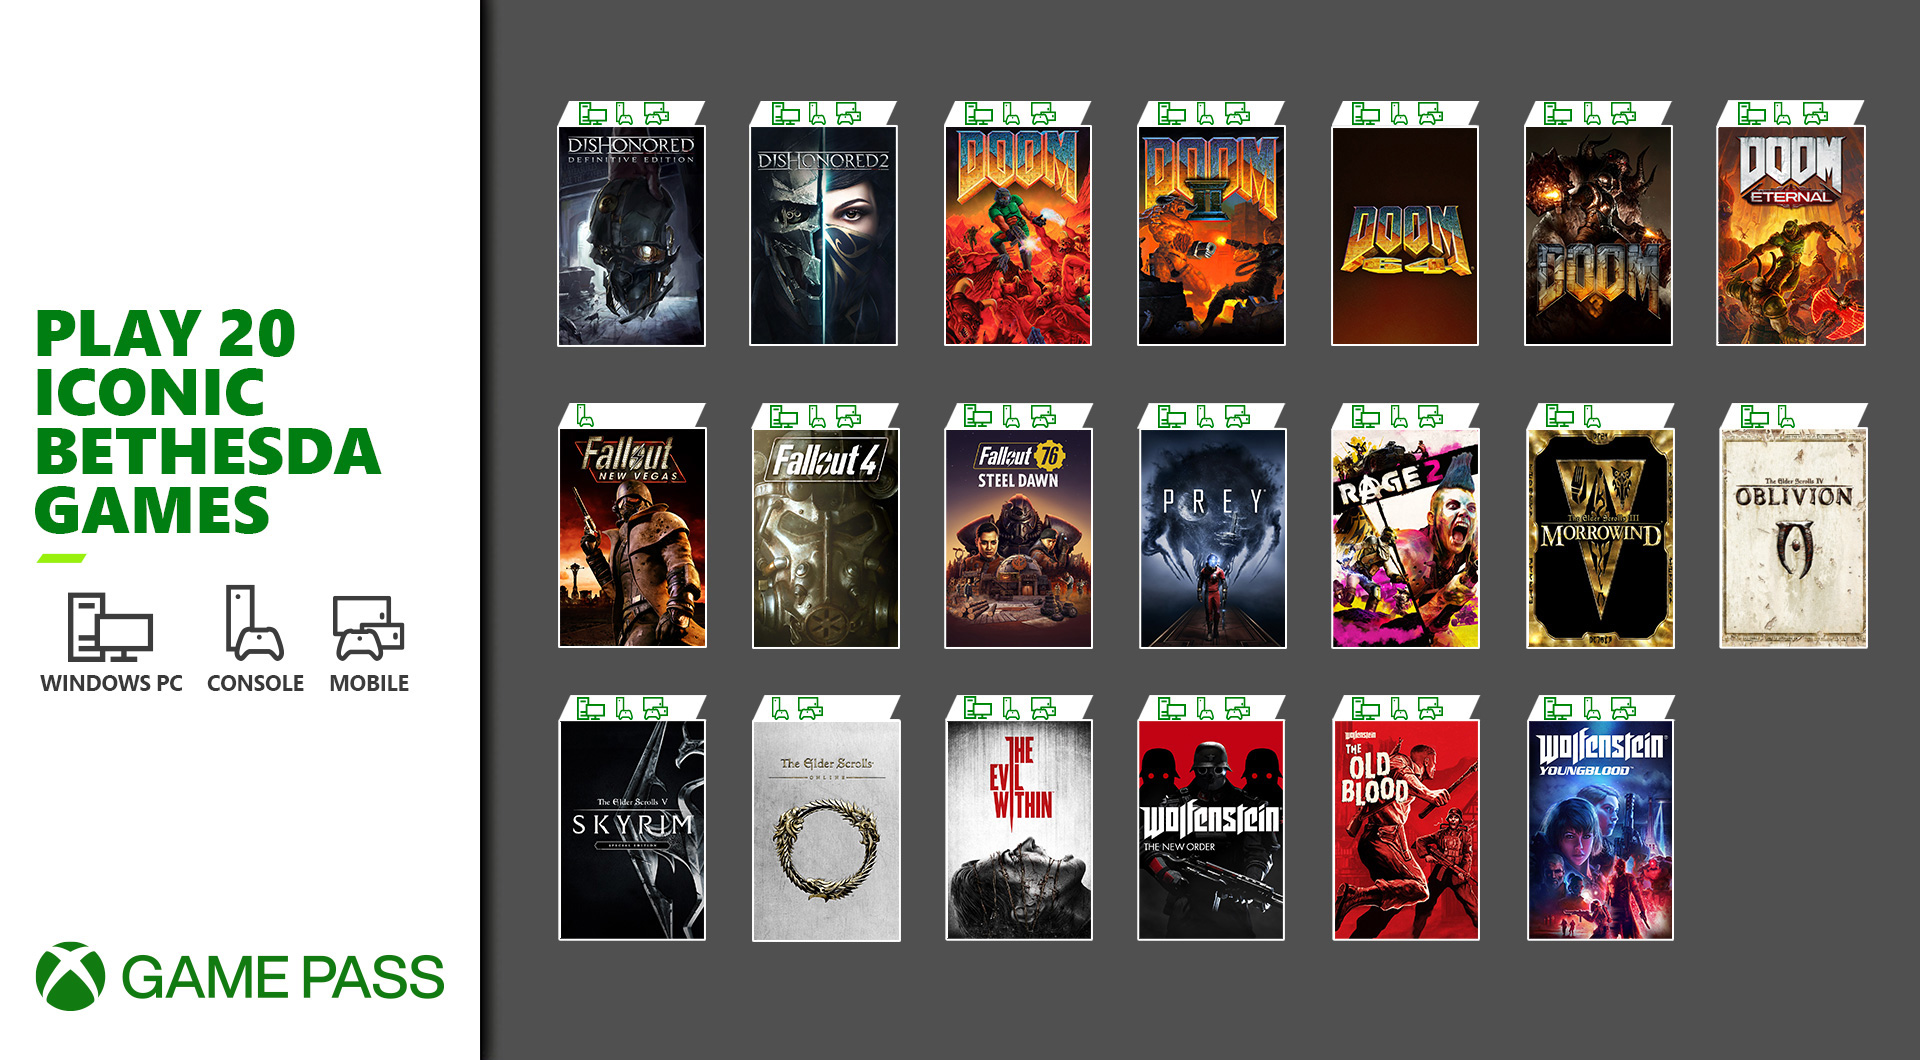 Xbox Game Pass: Spiele ab morgen diese 20 Titel der größten Bethesda-Franchises inline